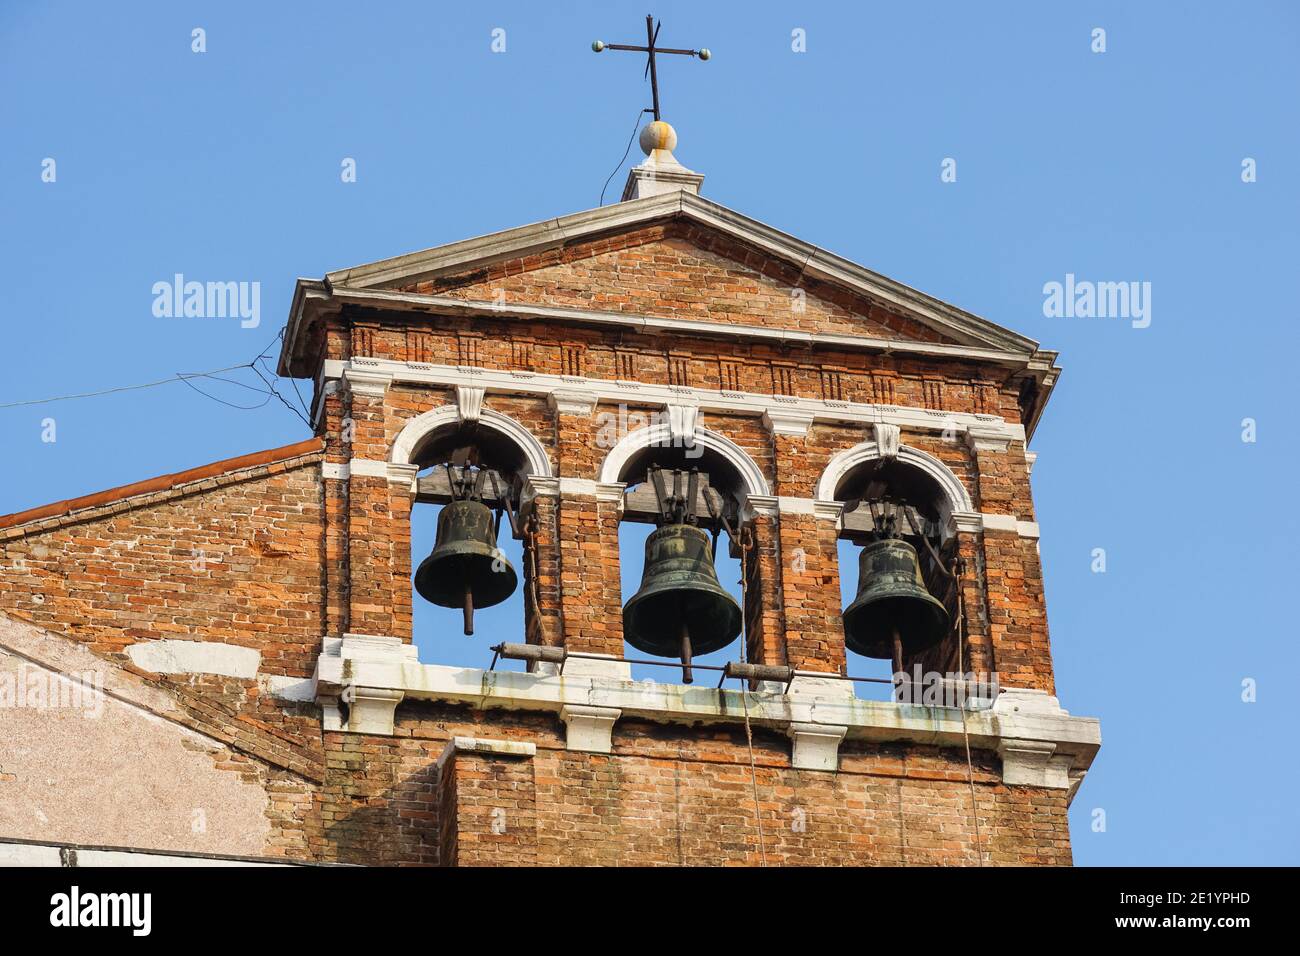 Trois cloches au clocher de l'église de Venise, en Italie Banque D'Images